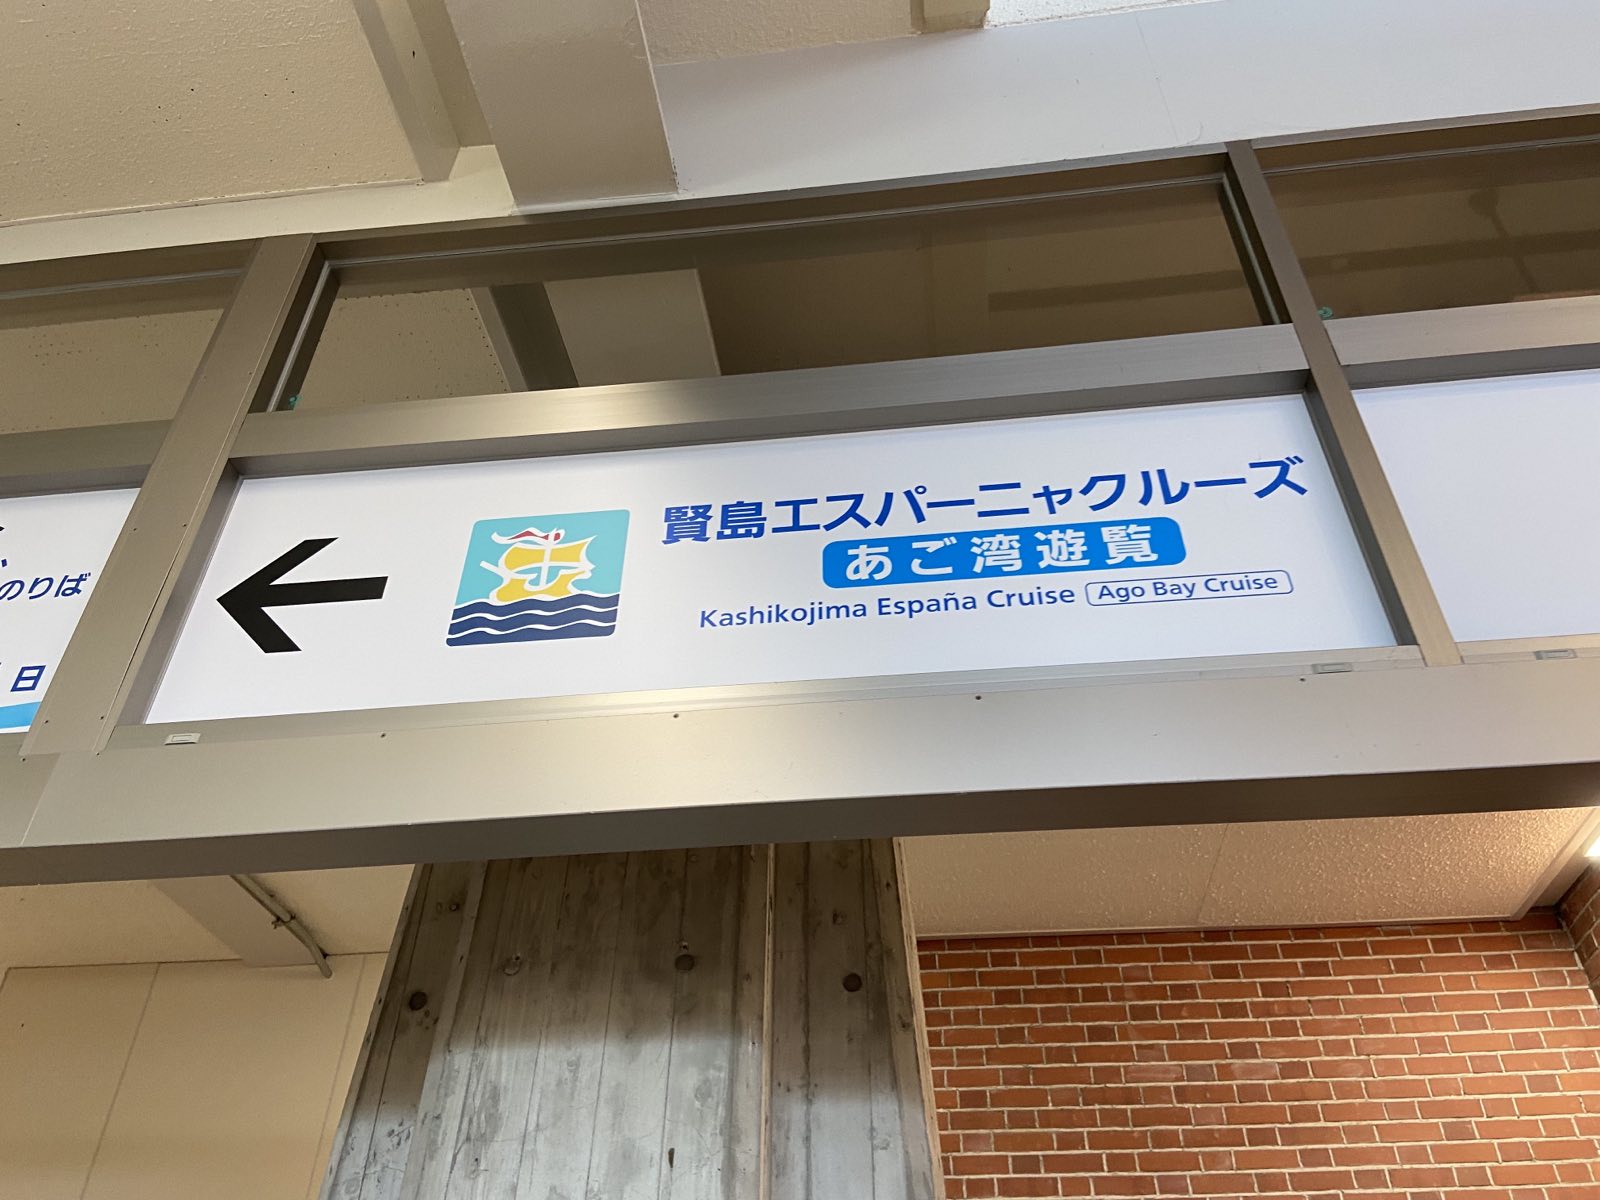 賢島エスパーニャクルーズの駅の看板